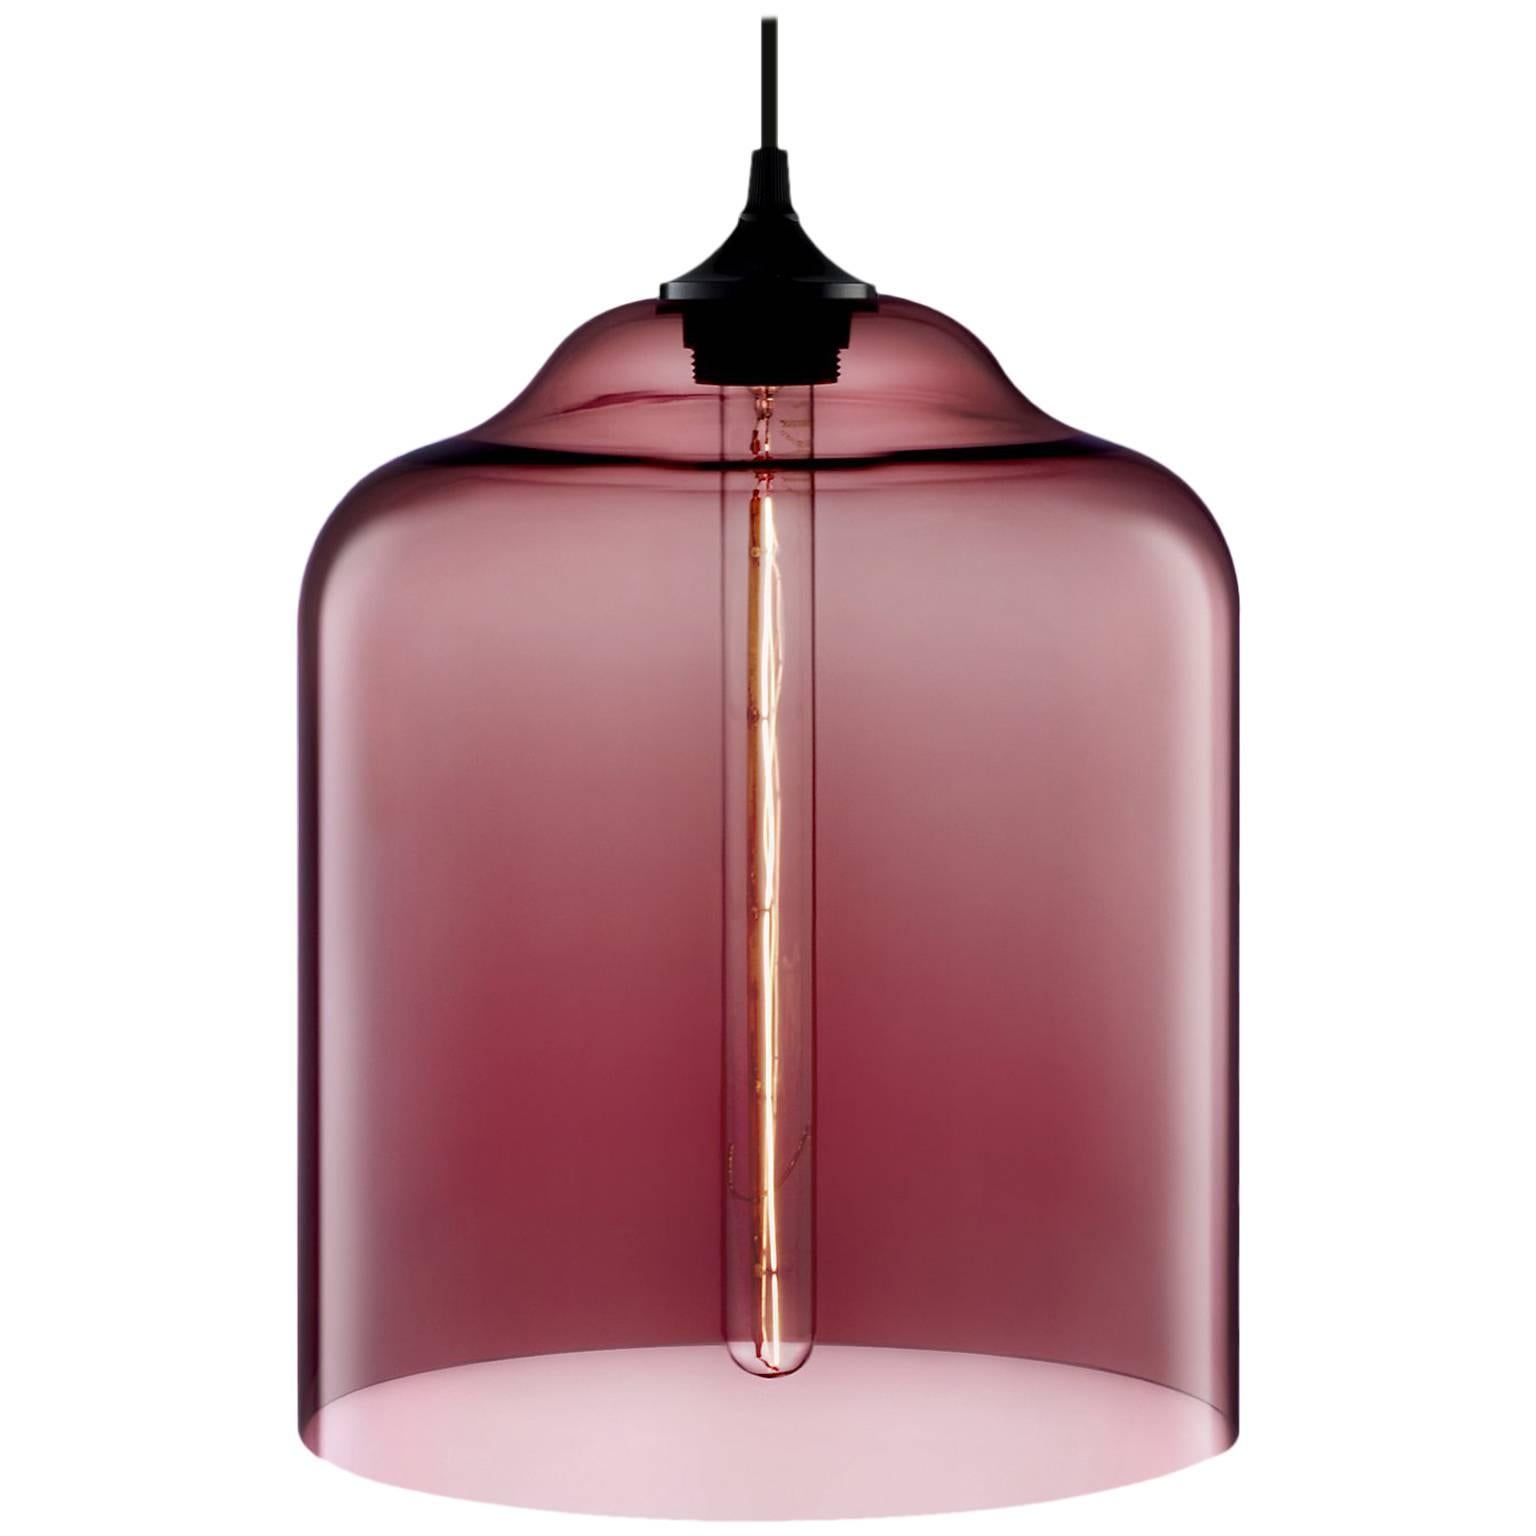 Glockenglas-Hängelampe aus mundgeblasenem modernem Glas in Pflaumenform, hergestellt in den USA